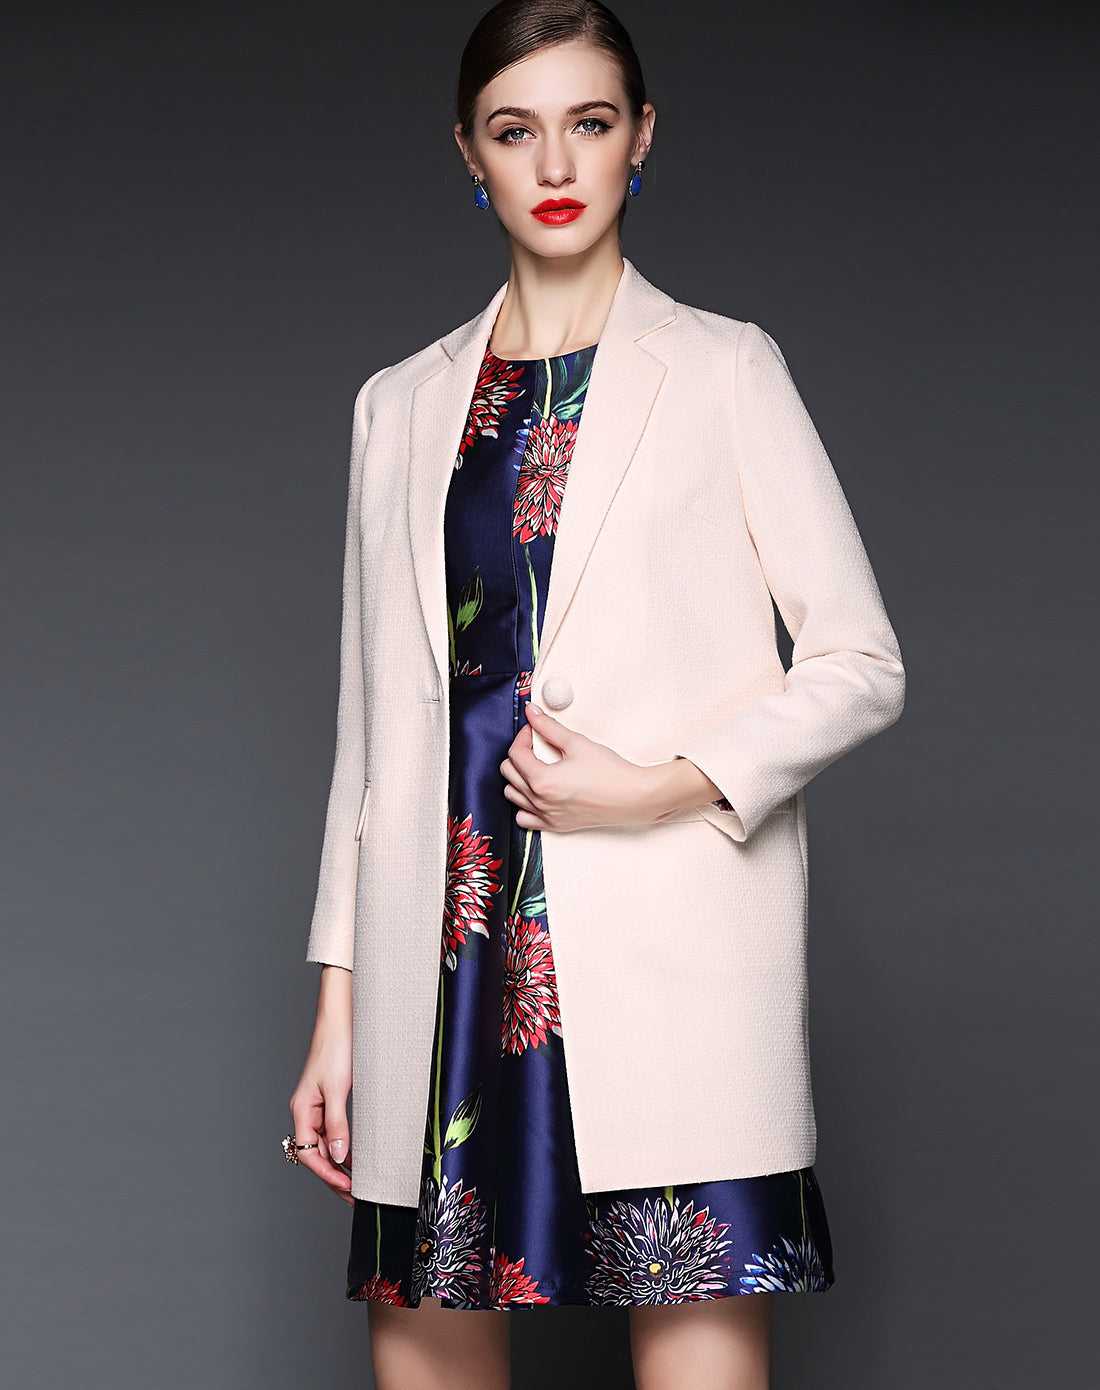 Fashion Suit Jacket long Sleeve Women's Loose Windbreaker office work Outerwear Sai Feel